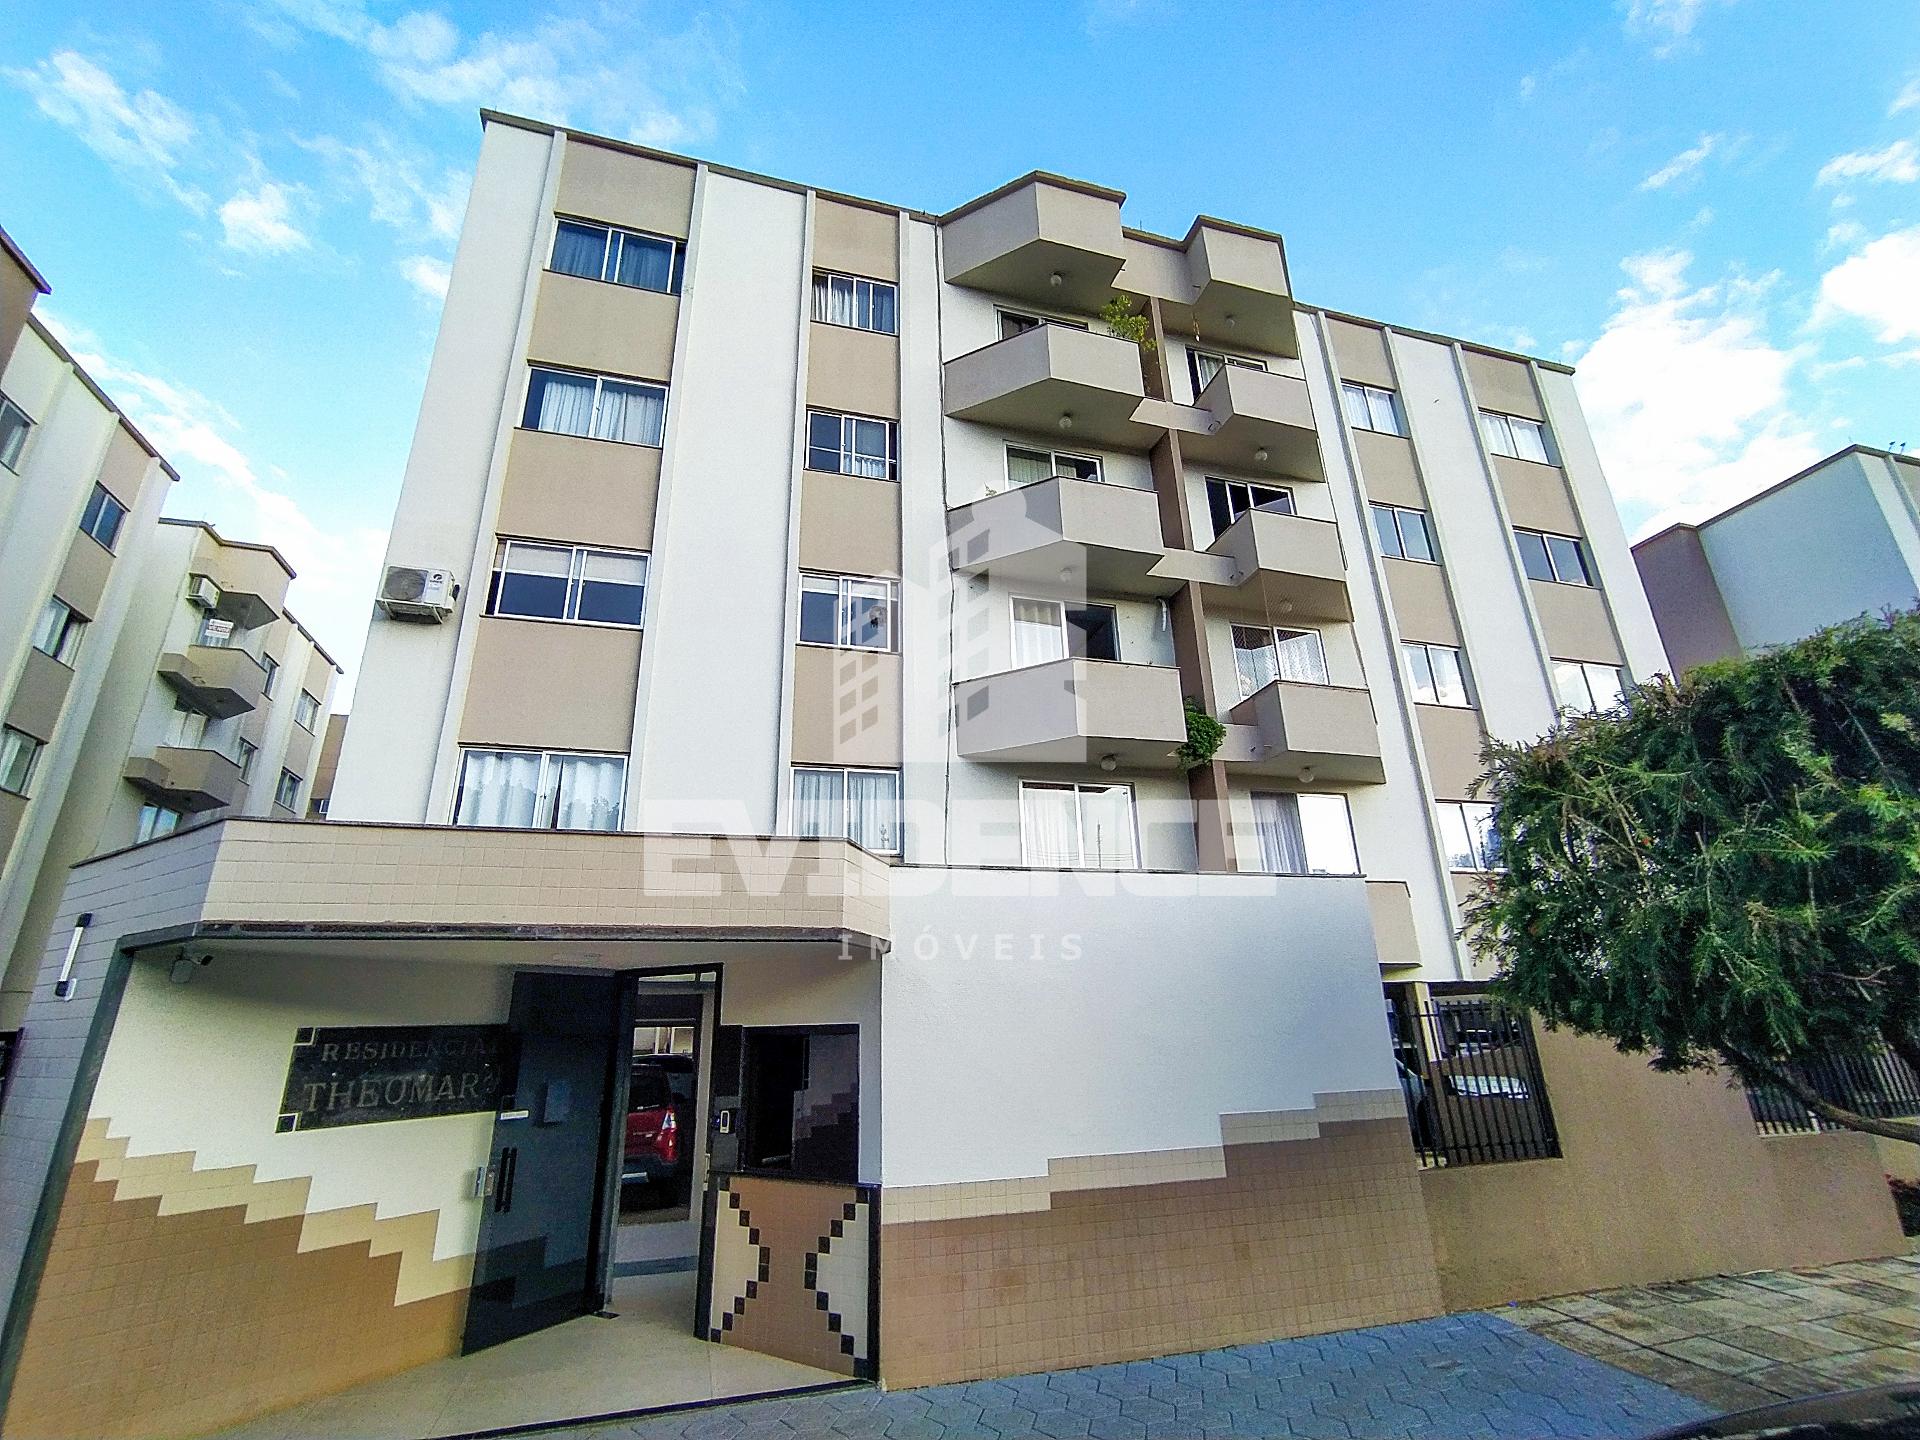 Apartamento com 3 dormitórios à venda, SANTA TEREZINHA, PATO BRANCO - PR